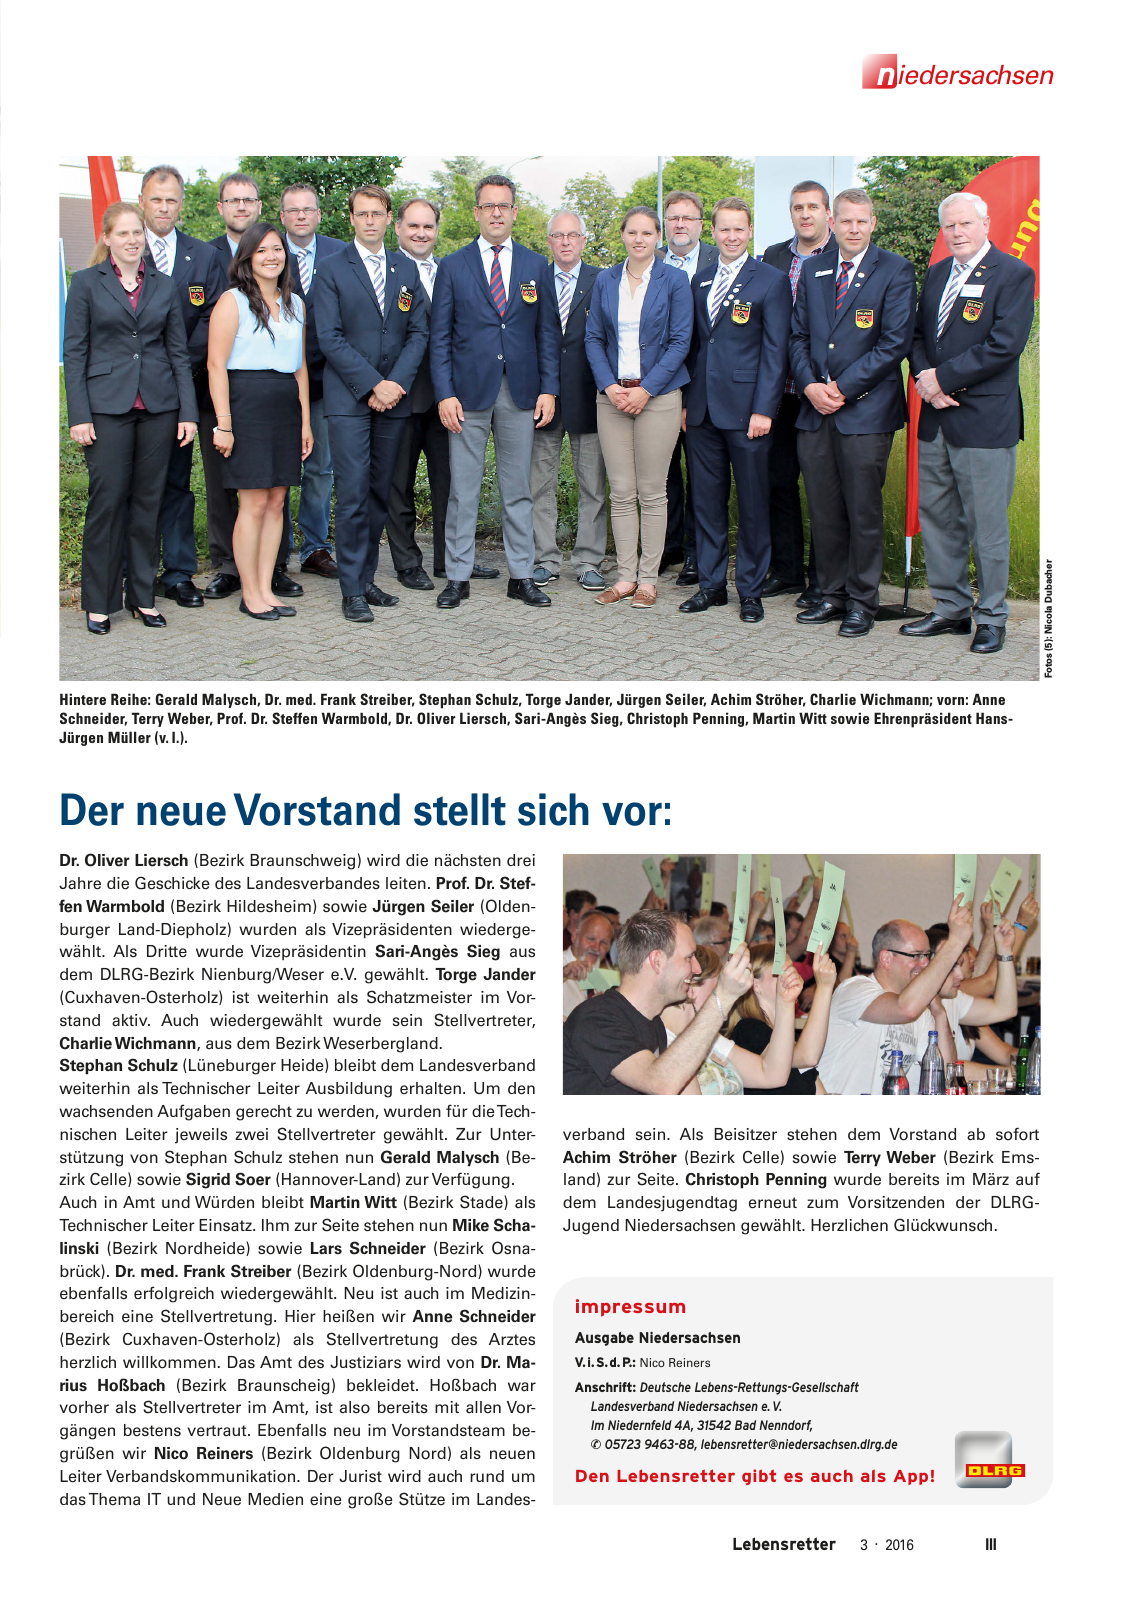 Vorschau Lebensretter 3/2016 - Regionalausgabe Niedersachsen Seite 5